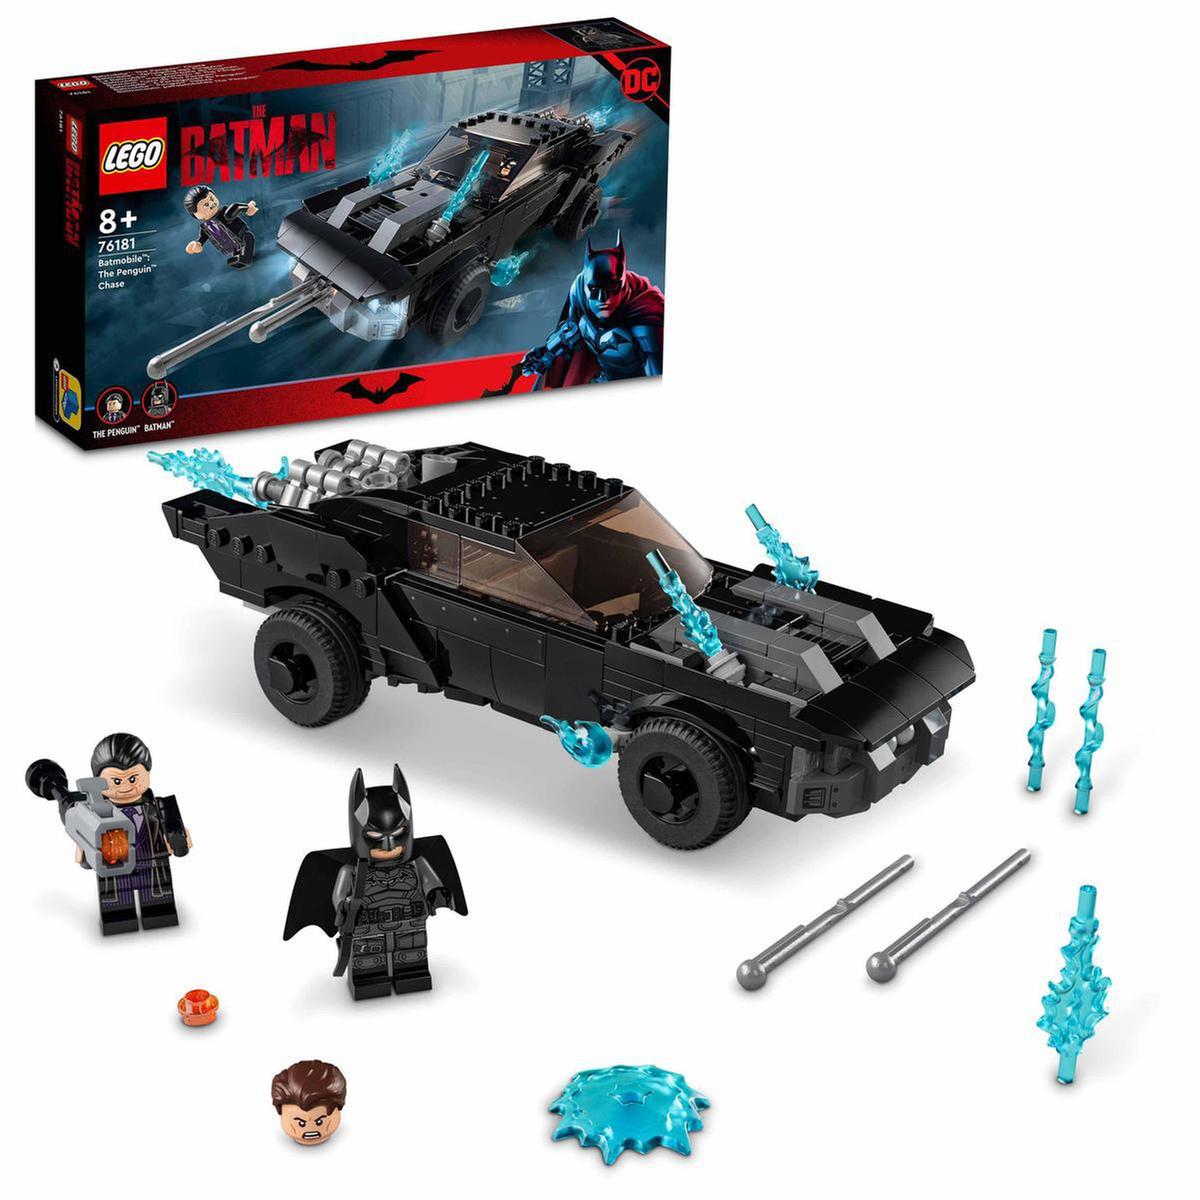 LEGO DC Cómics - Batmobile: a perseguição do Penguin - 76181 | LEGO DC  SUPER HEROES | Loja de brinquedos e videojogos Online Toysrus